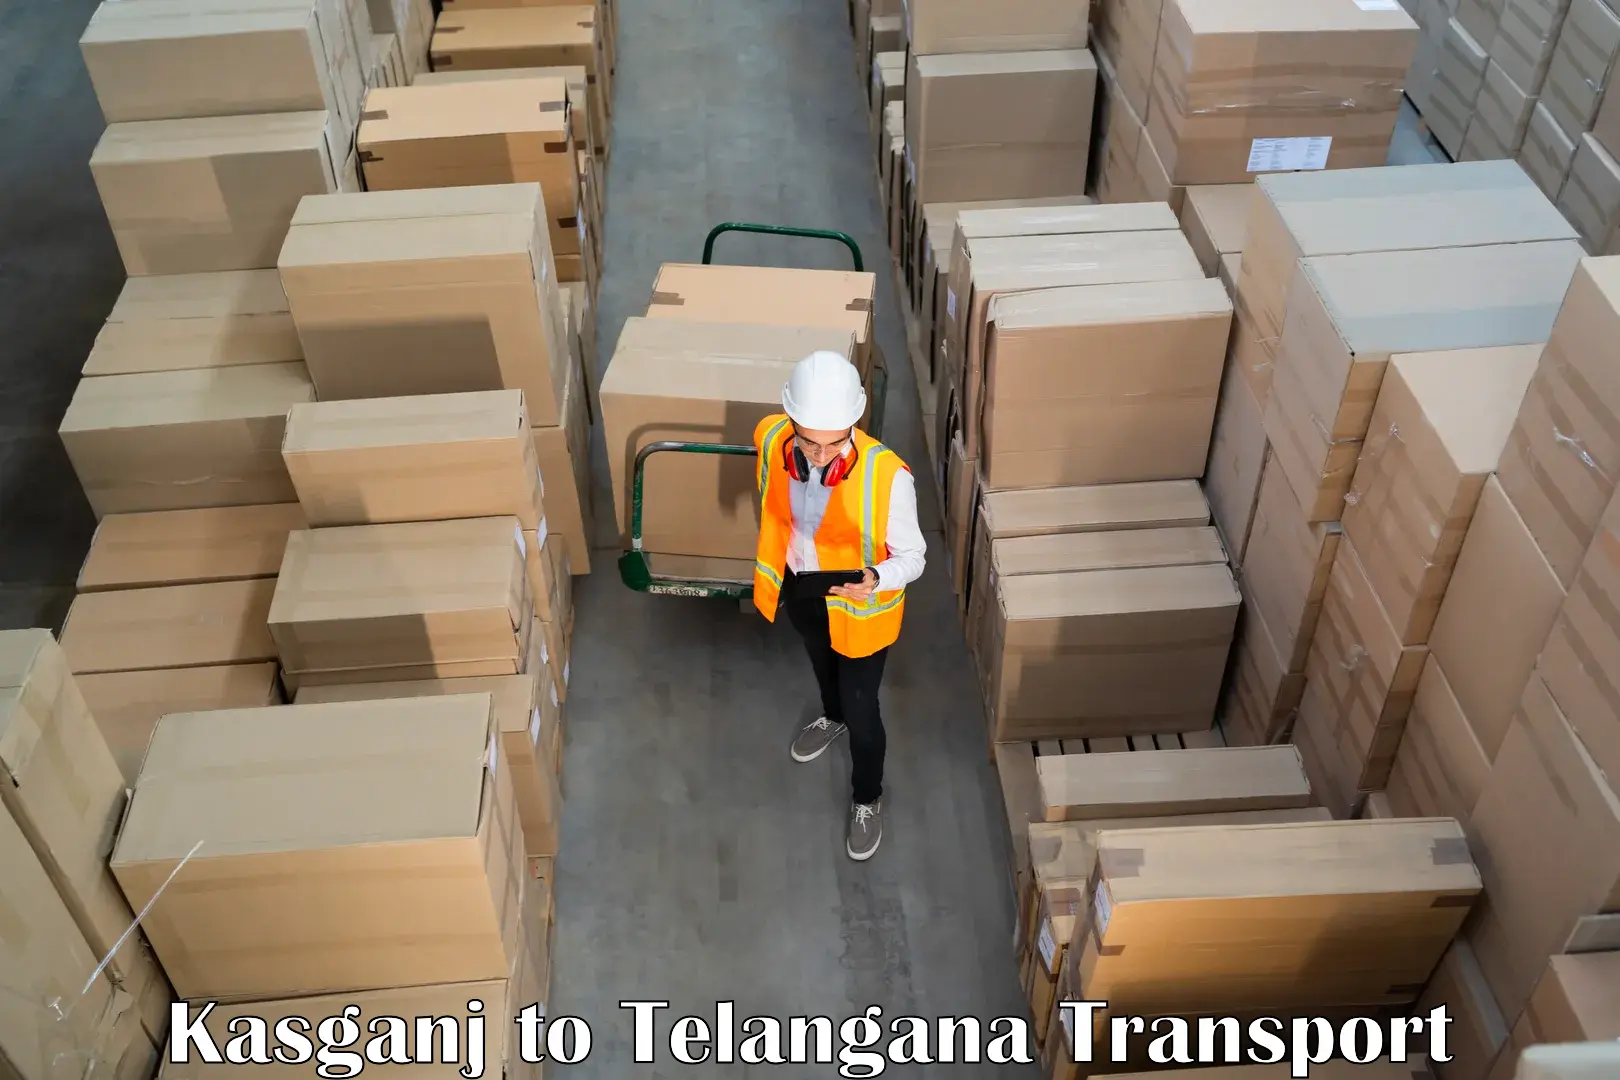 Furniture transport service Kasganj to Pathipaka